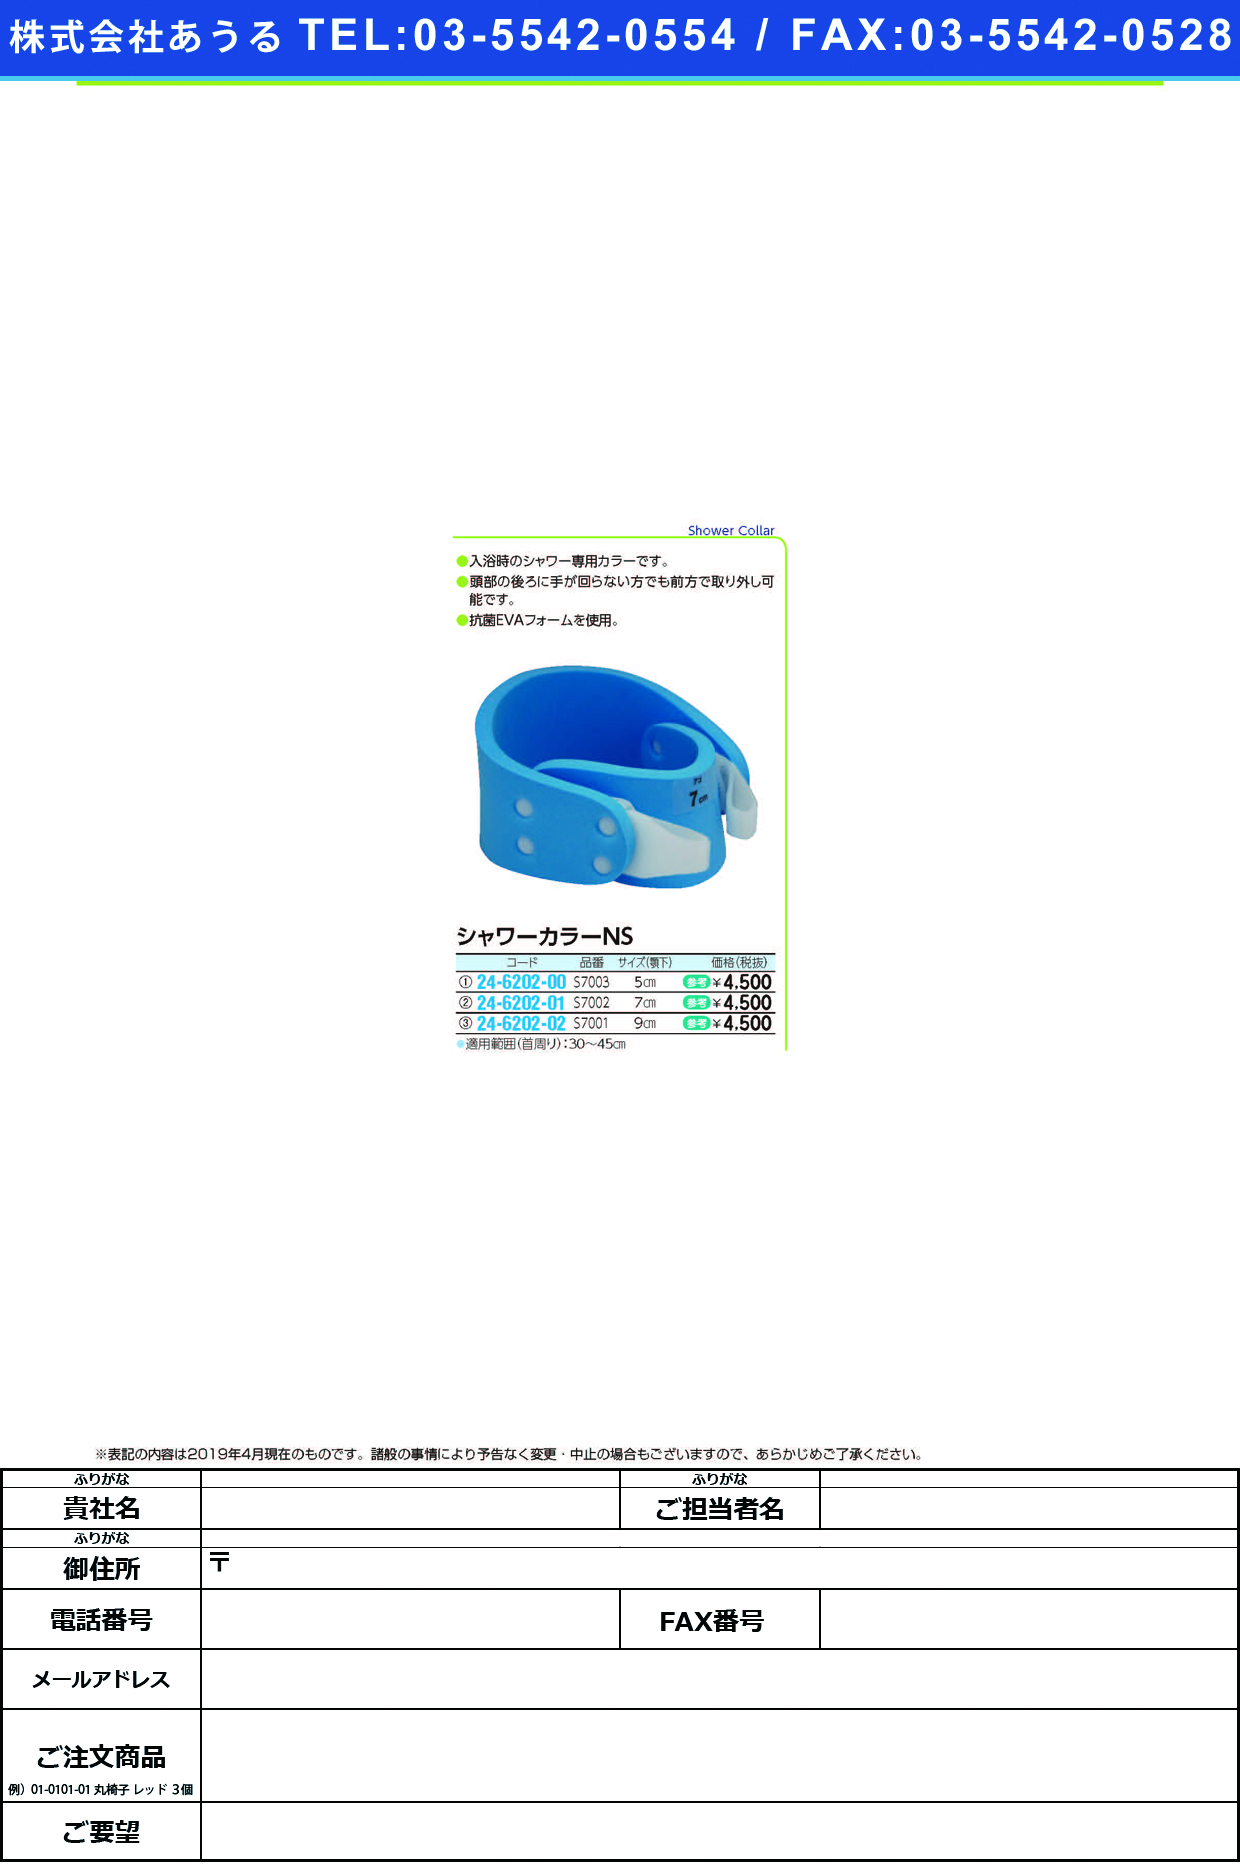 (24-6202-00)シャワーカラーＮＳ S7003(ｱｺﾞｼﾀｽﾝﾎﾟｳ5CM) ｼｬﾜｰｶﾗｰNS【1個単位】【2019年カタログ商品】